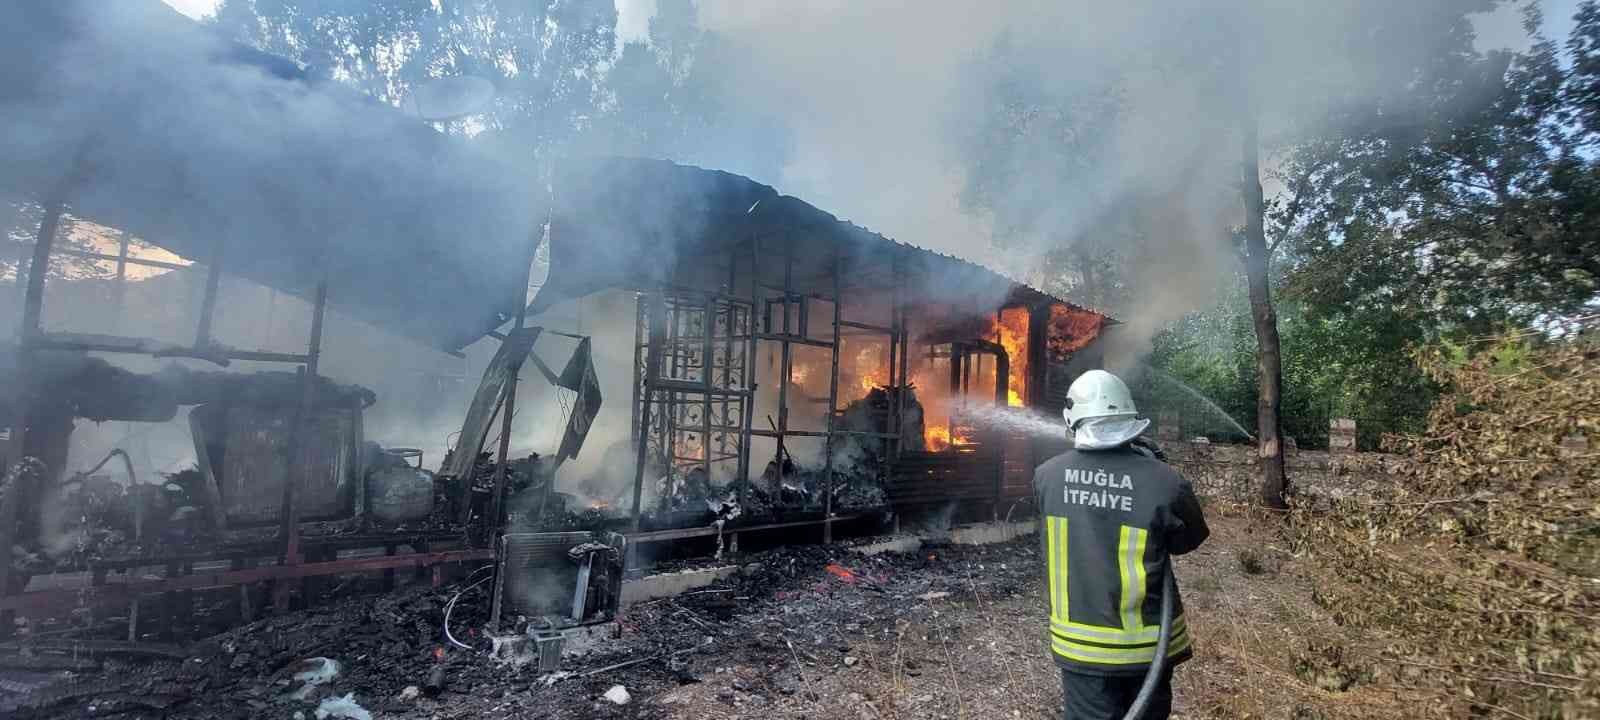 Fethiye’de bungalov ev, alev alev yandı